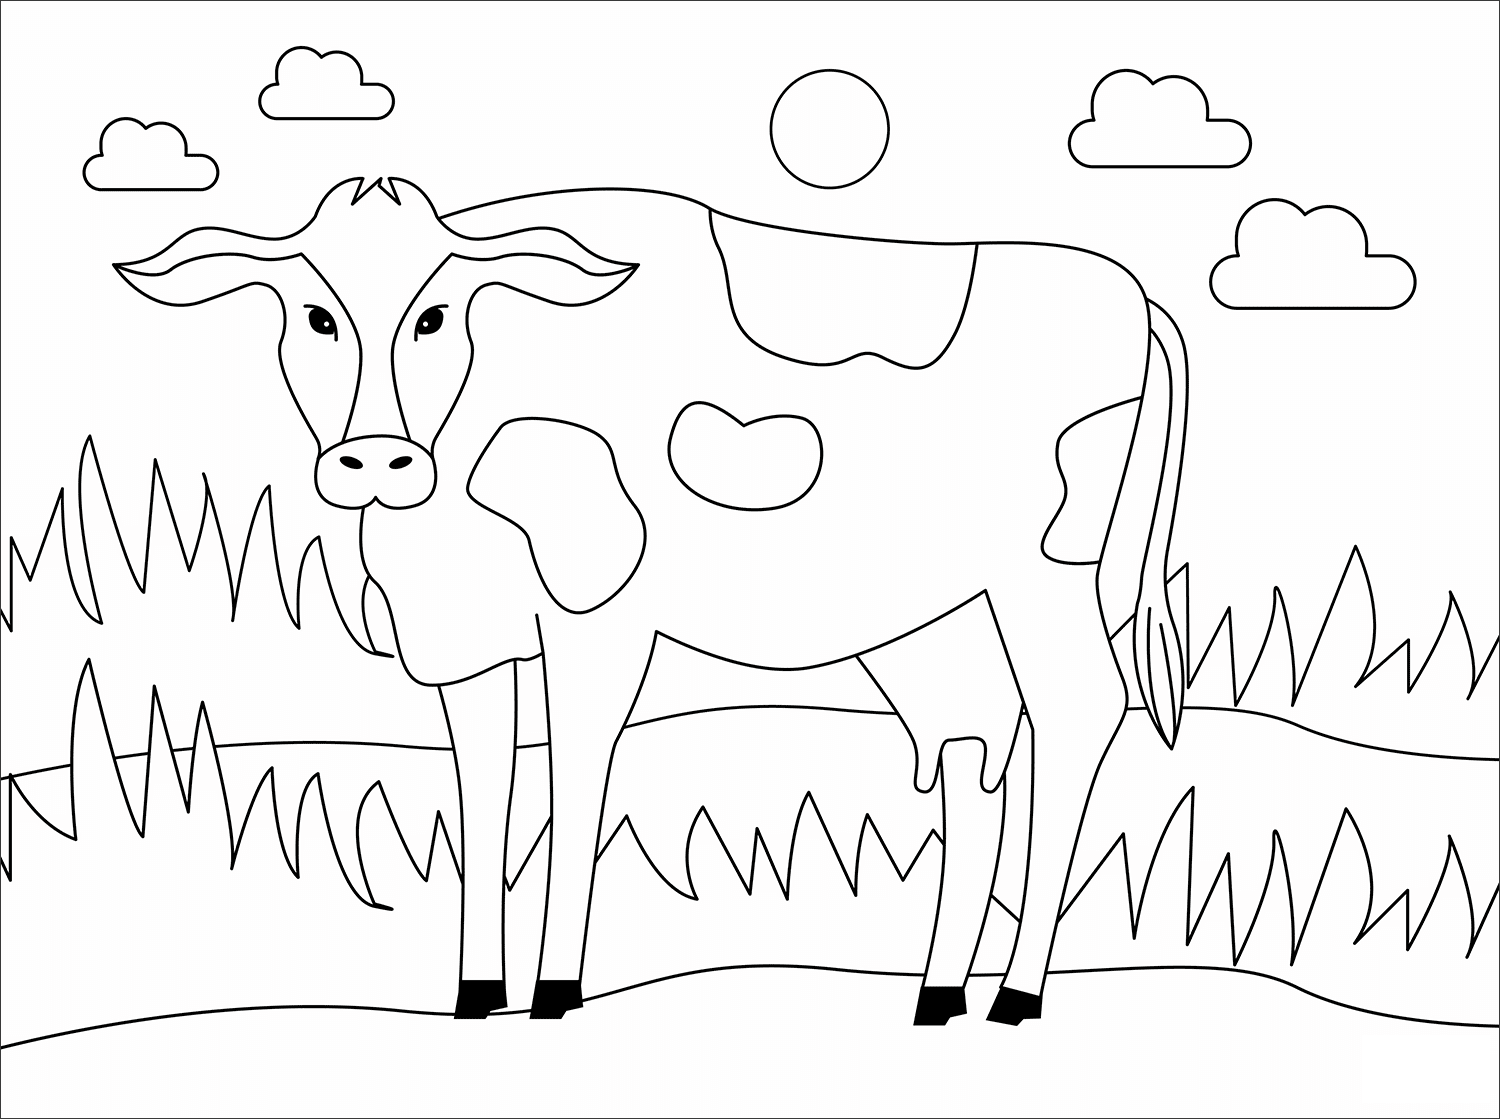 Раскрашивать коров. Раскраска корова. Корова раскраска для детей. Корова раскраска для малышей. Корова картинка для детей раскраска.